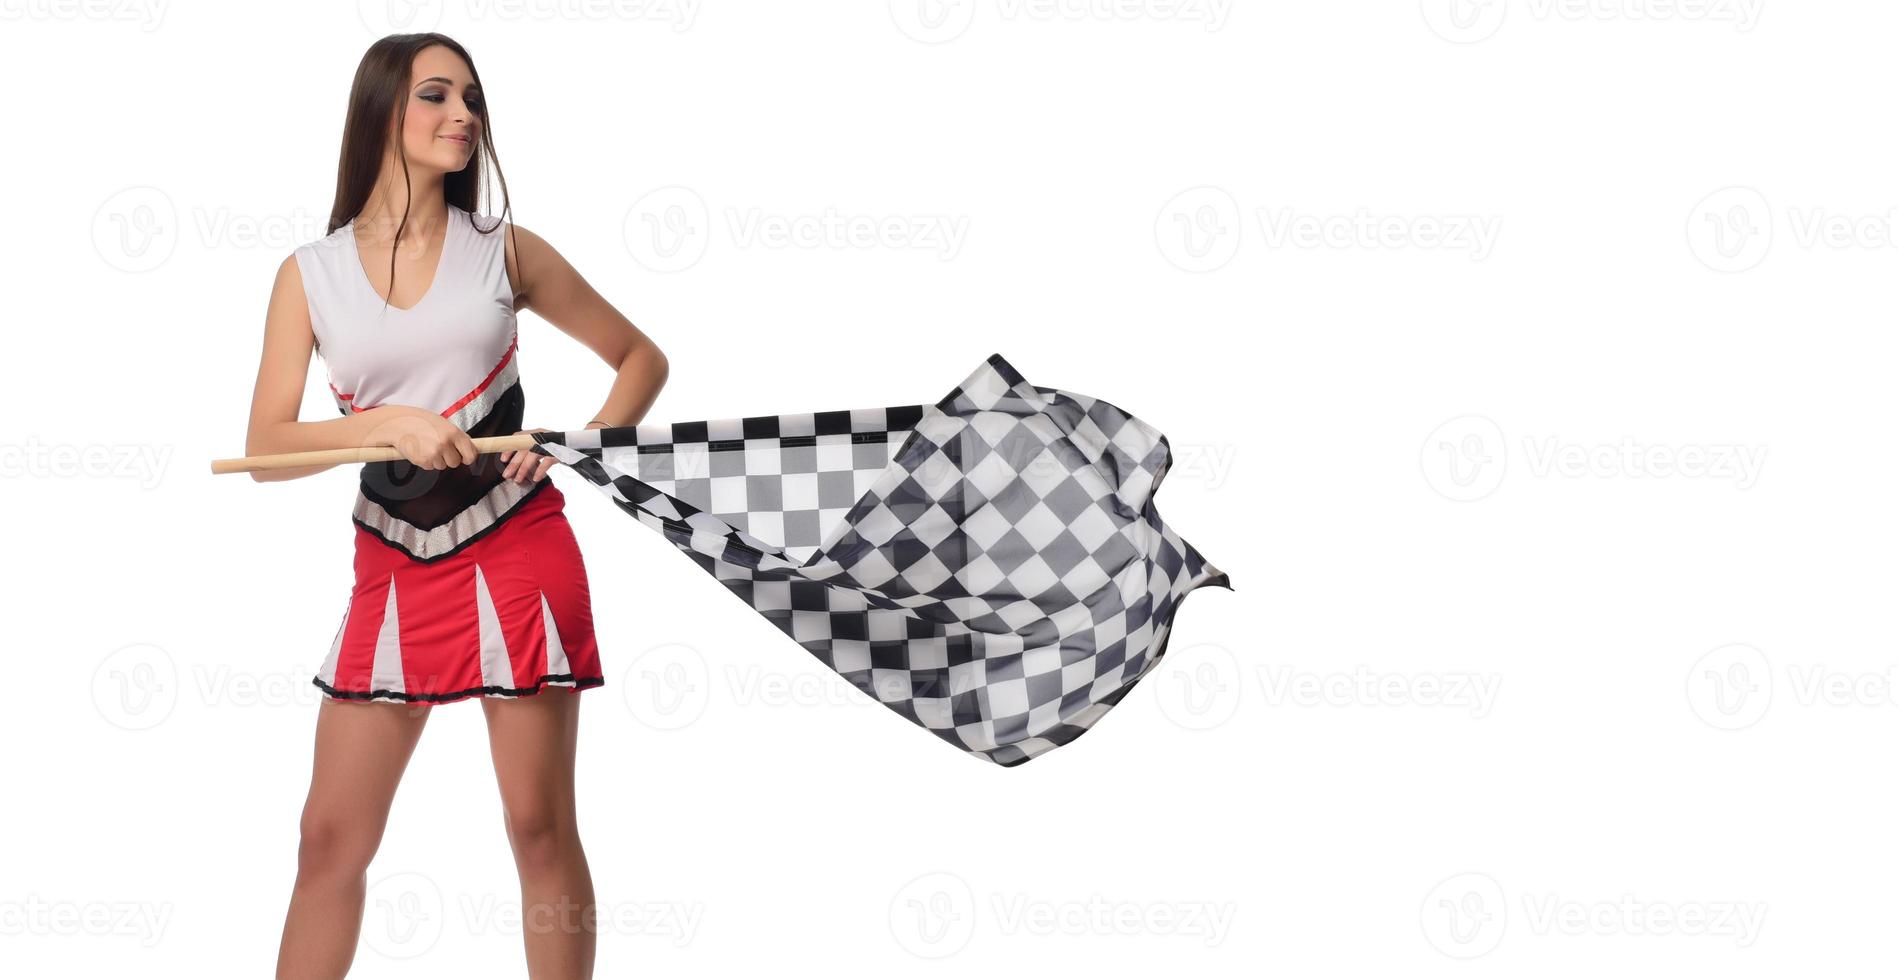 hermosa modelo sosteniendo la bandera de acabado aislada sobre fondo blanco. bandera de acabado de automovilismo en manos modelo femenino. foto